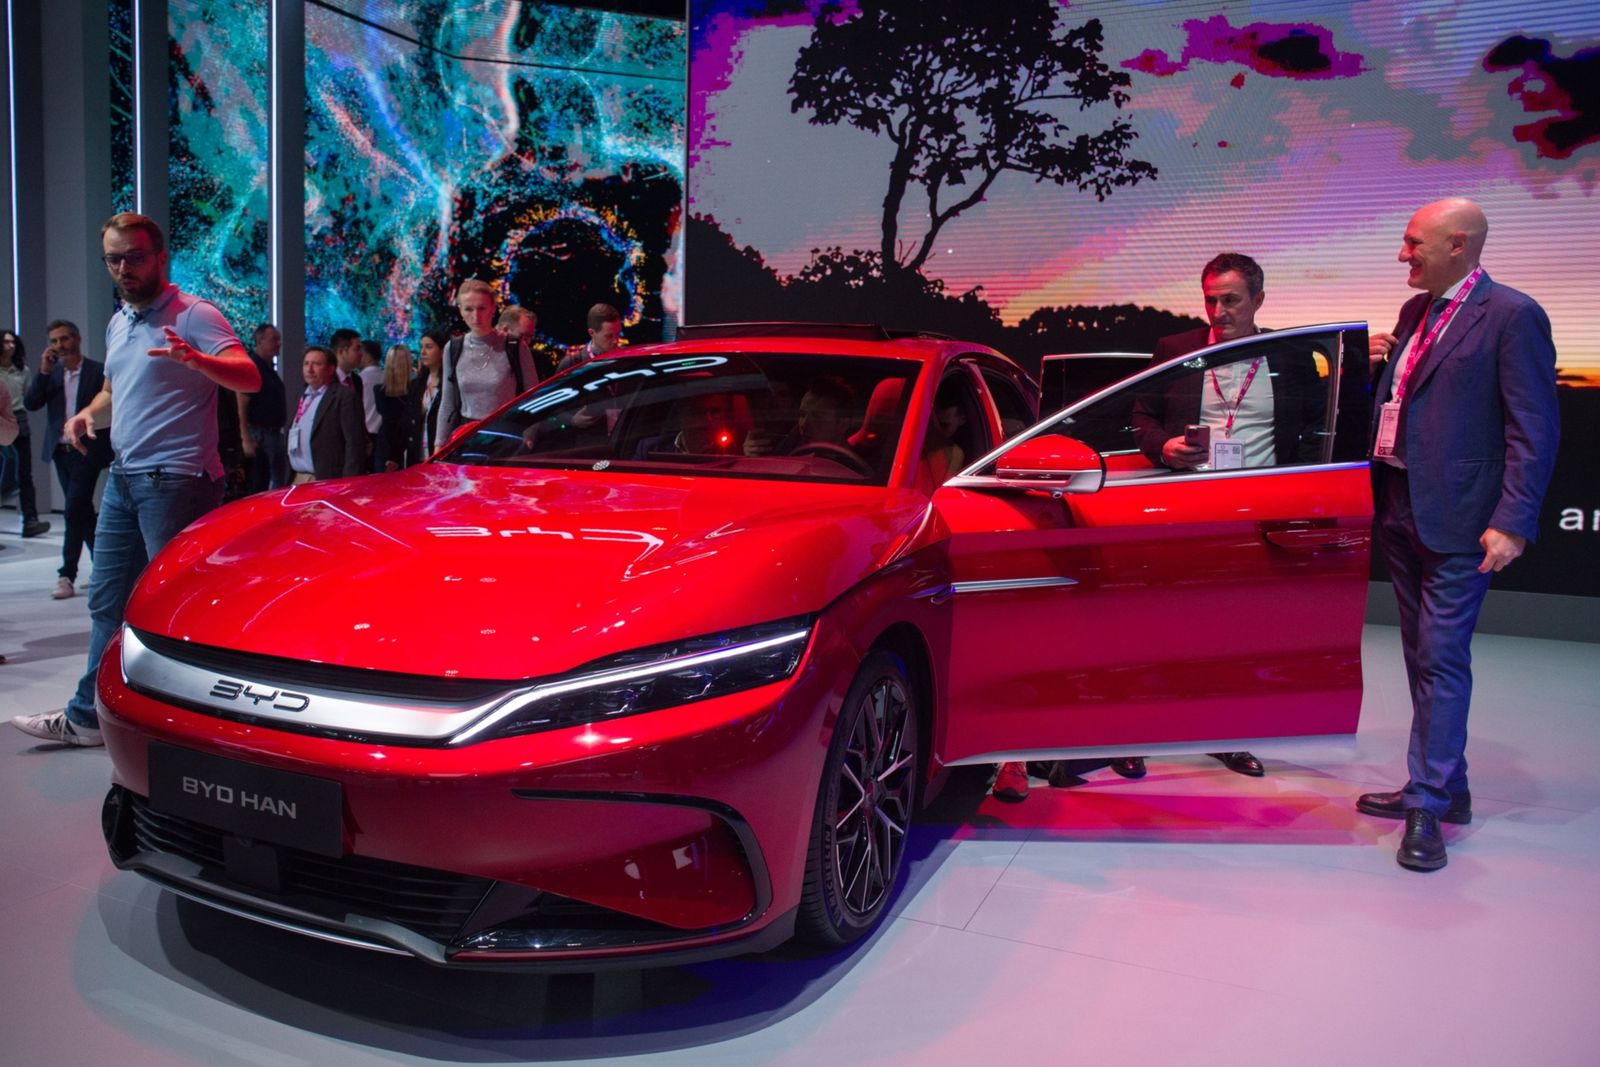  75 % نمو مبيعات السيارات الكهربائية في الصين خلال أكتوبر